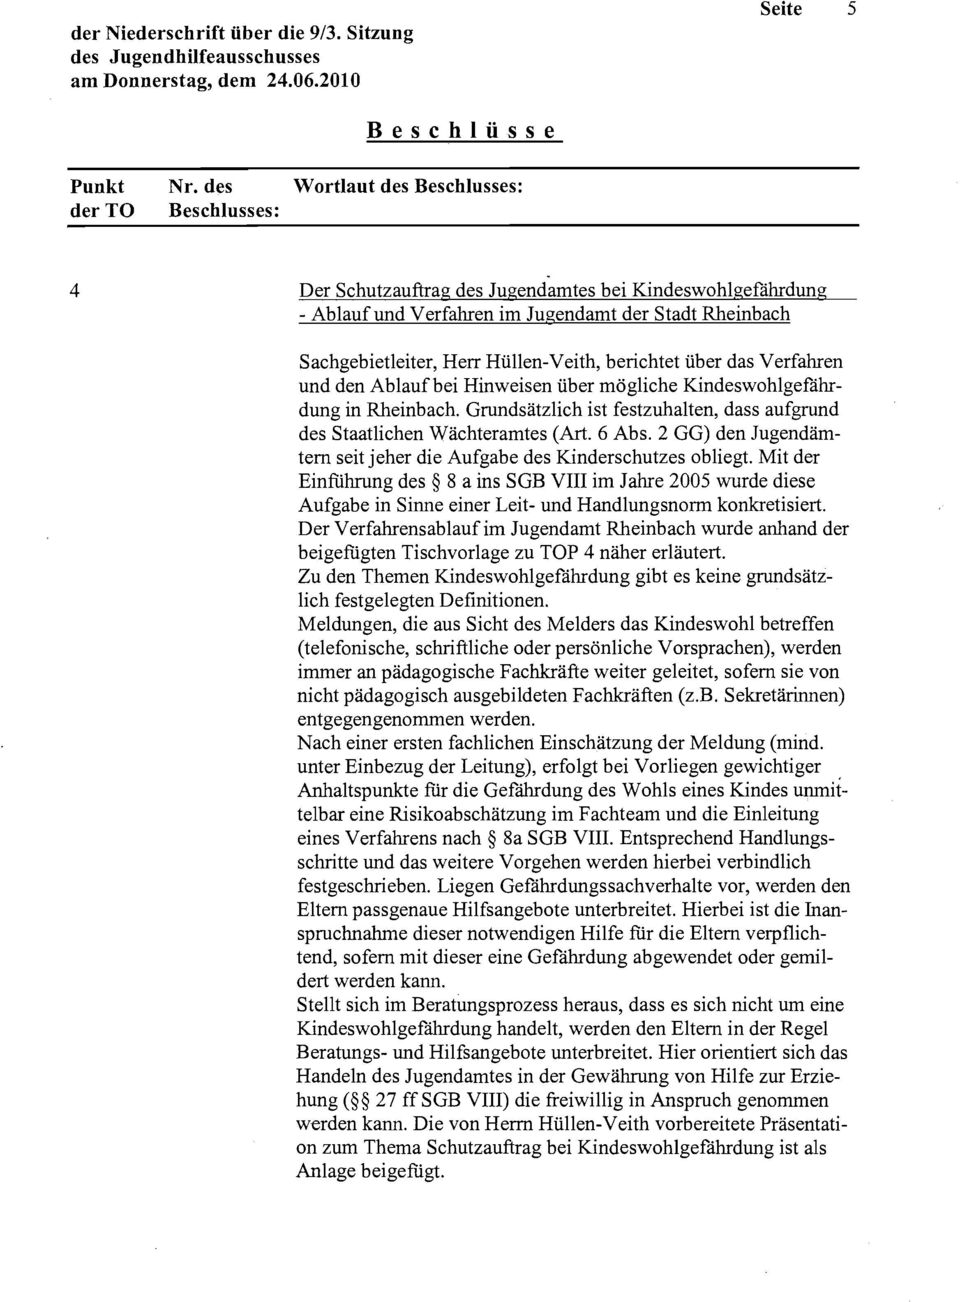 Hüllen-Veith, berichtet über das Verfahren und den Ablaufbei Hinweisen über mögliche Kindeswohlgefährdung in Rheinbach. Grundsätzlich ist festzuhalten, dass aufgrund des Staatlichen Wächteramtes (Art.